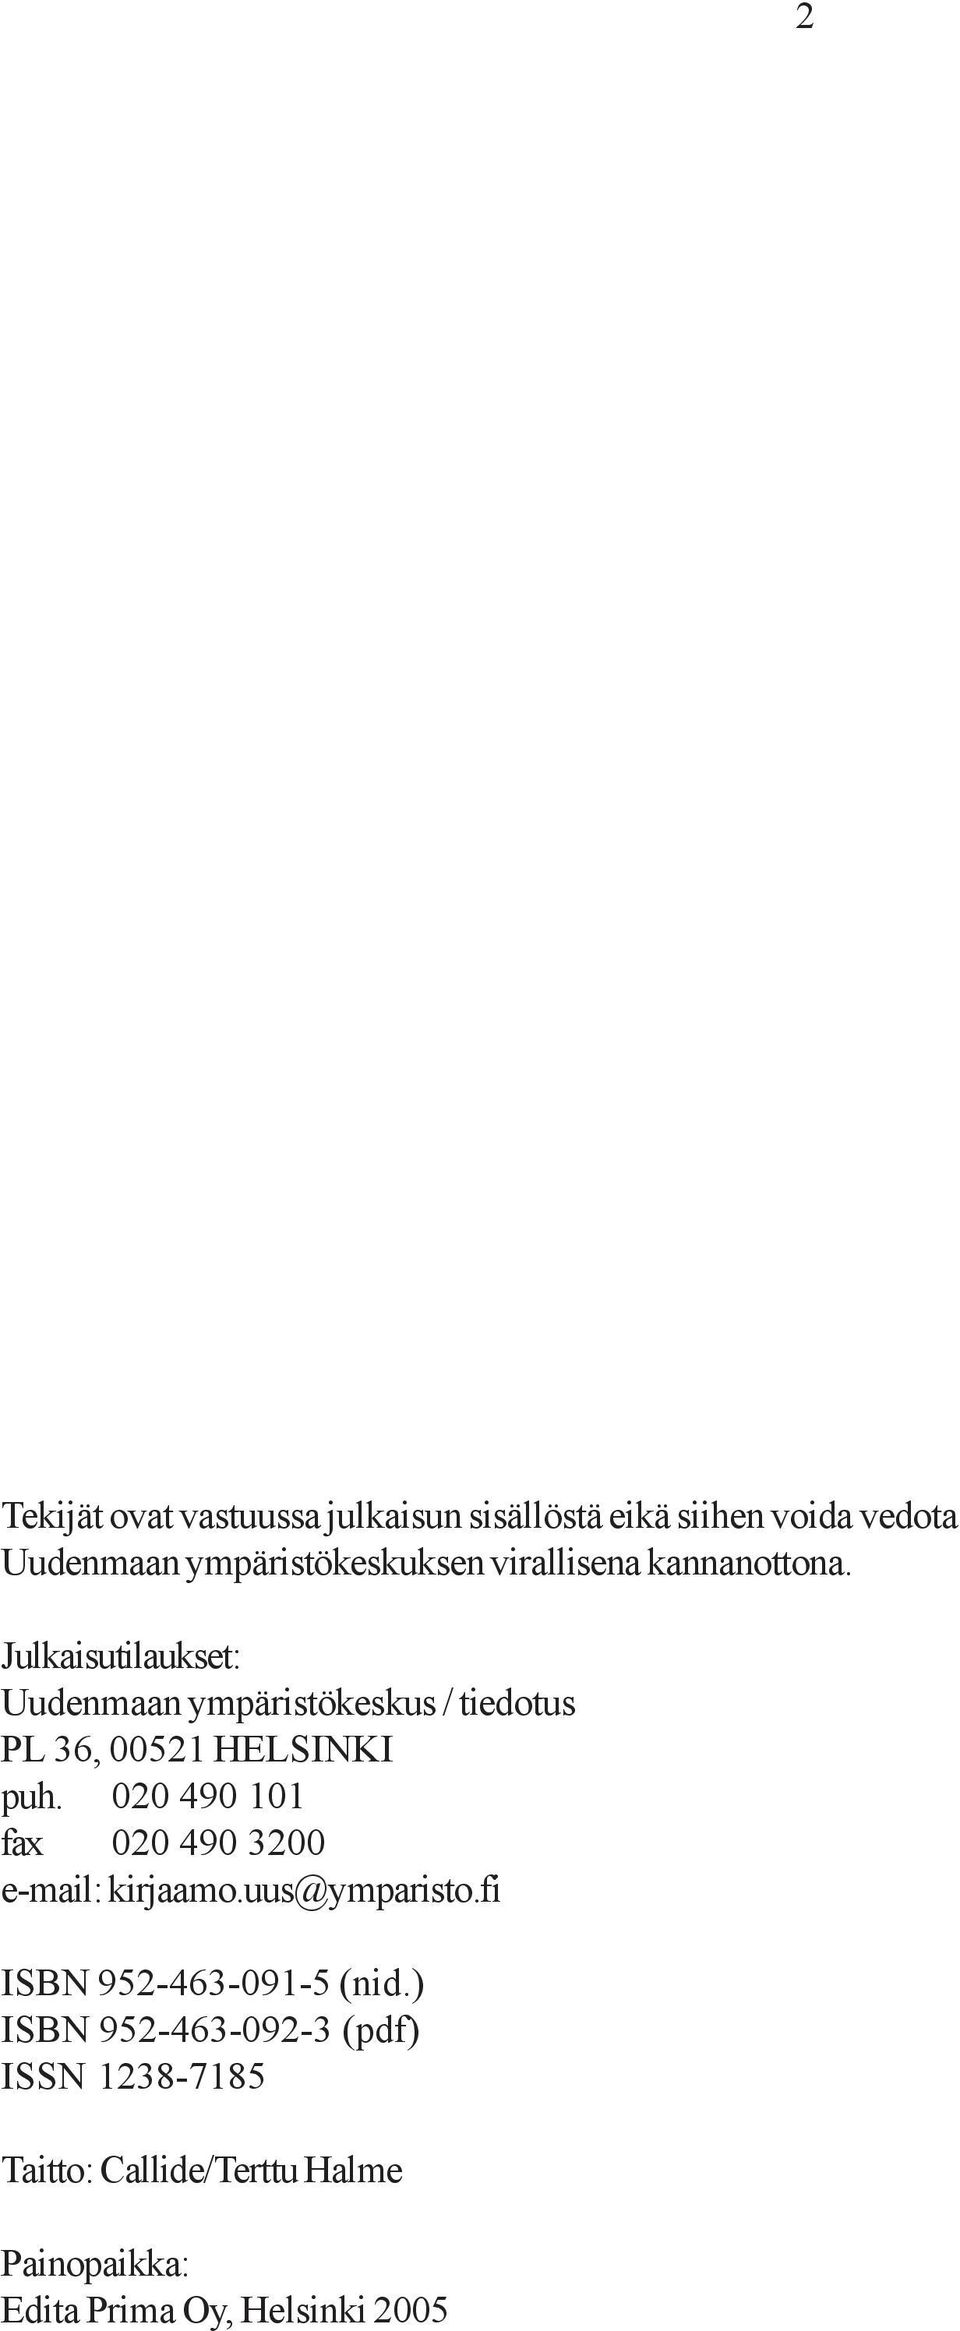 Julkaisutilaukset: Uudenmaan ympäristökeskus / tiedotus PL 36, 00521 HELSINKI puh.